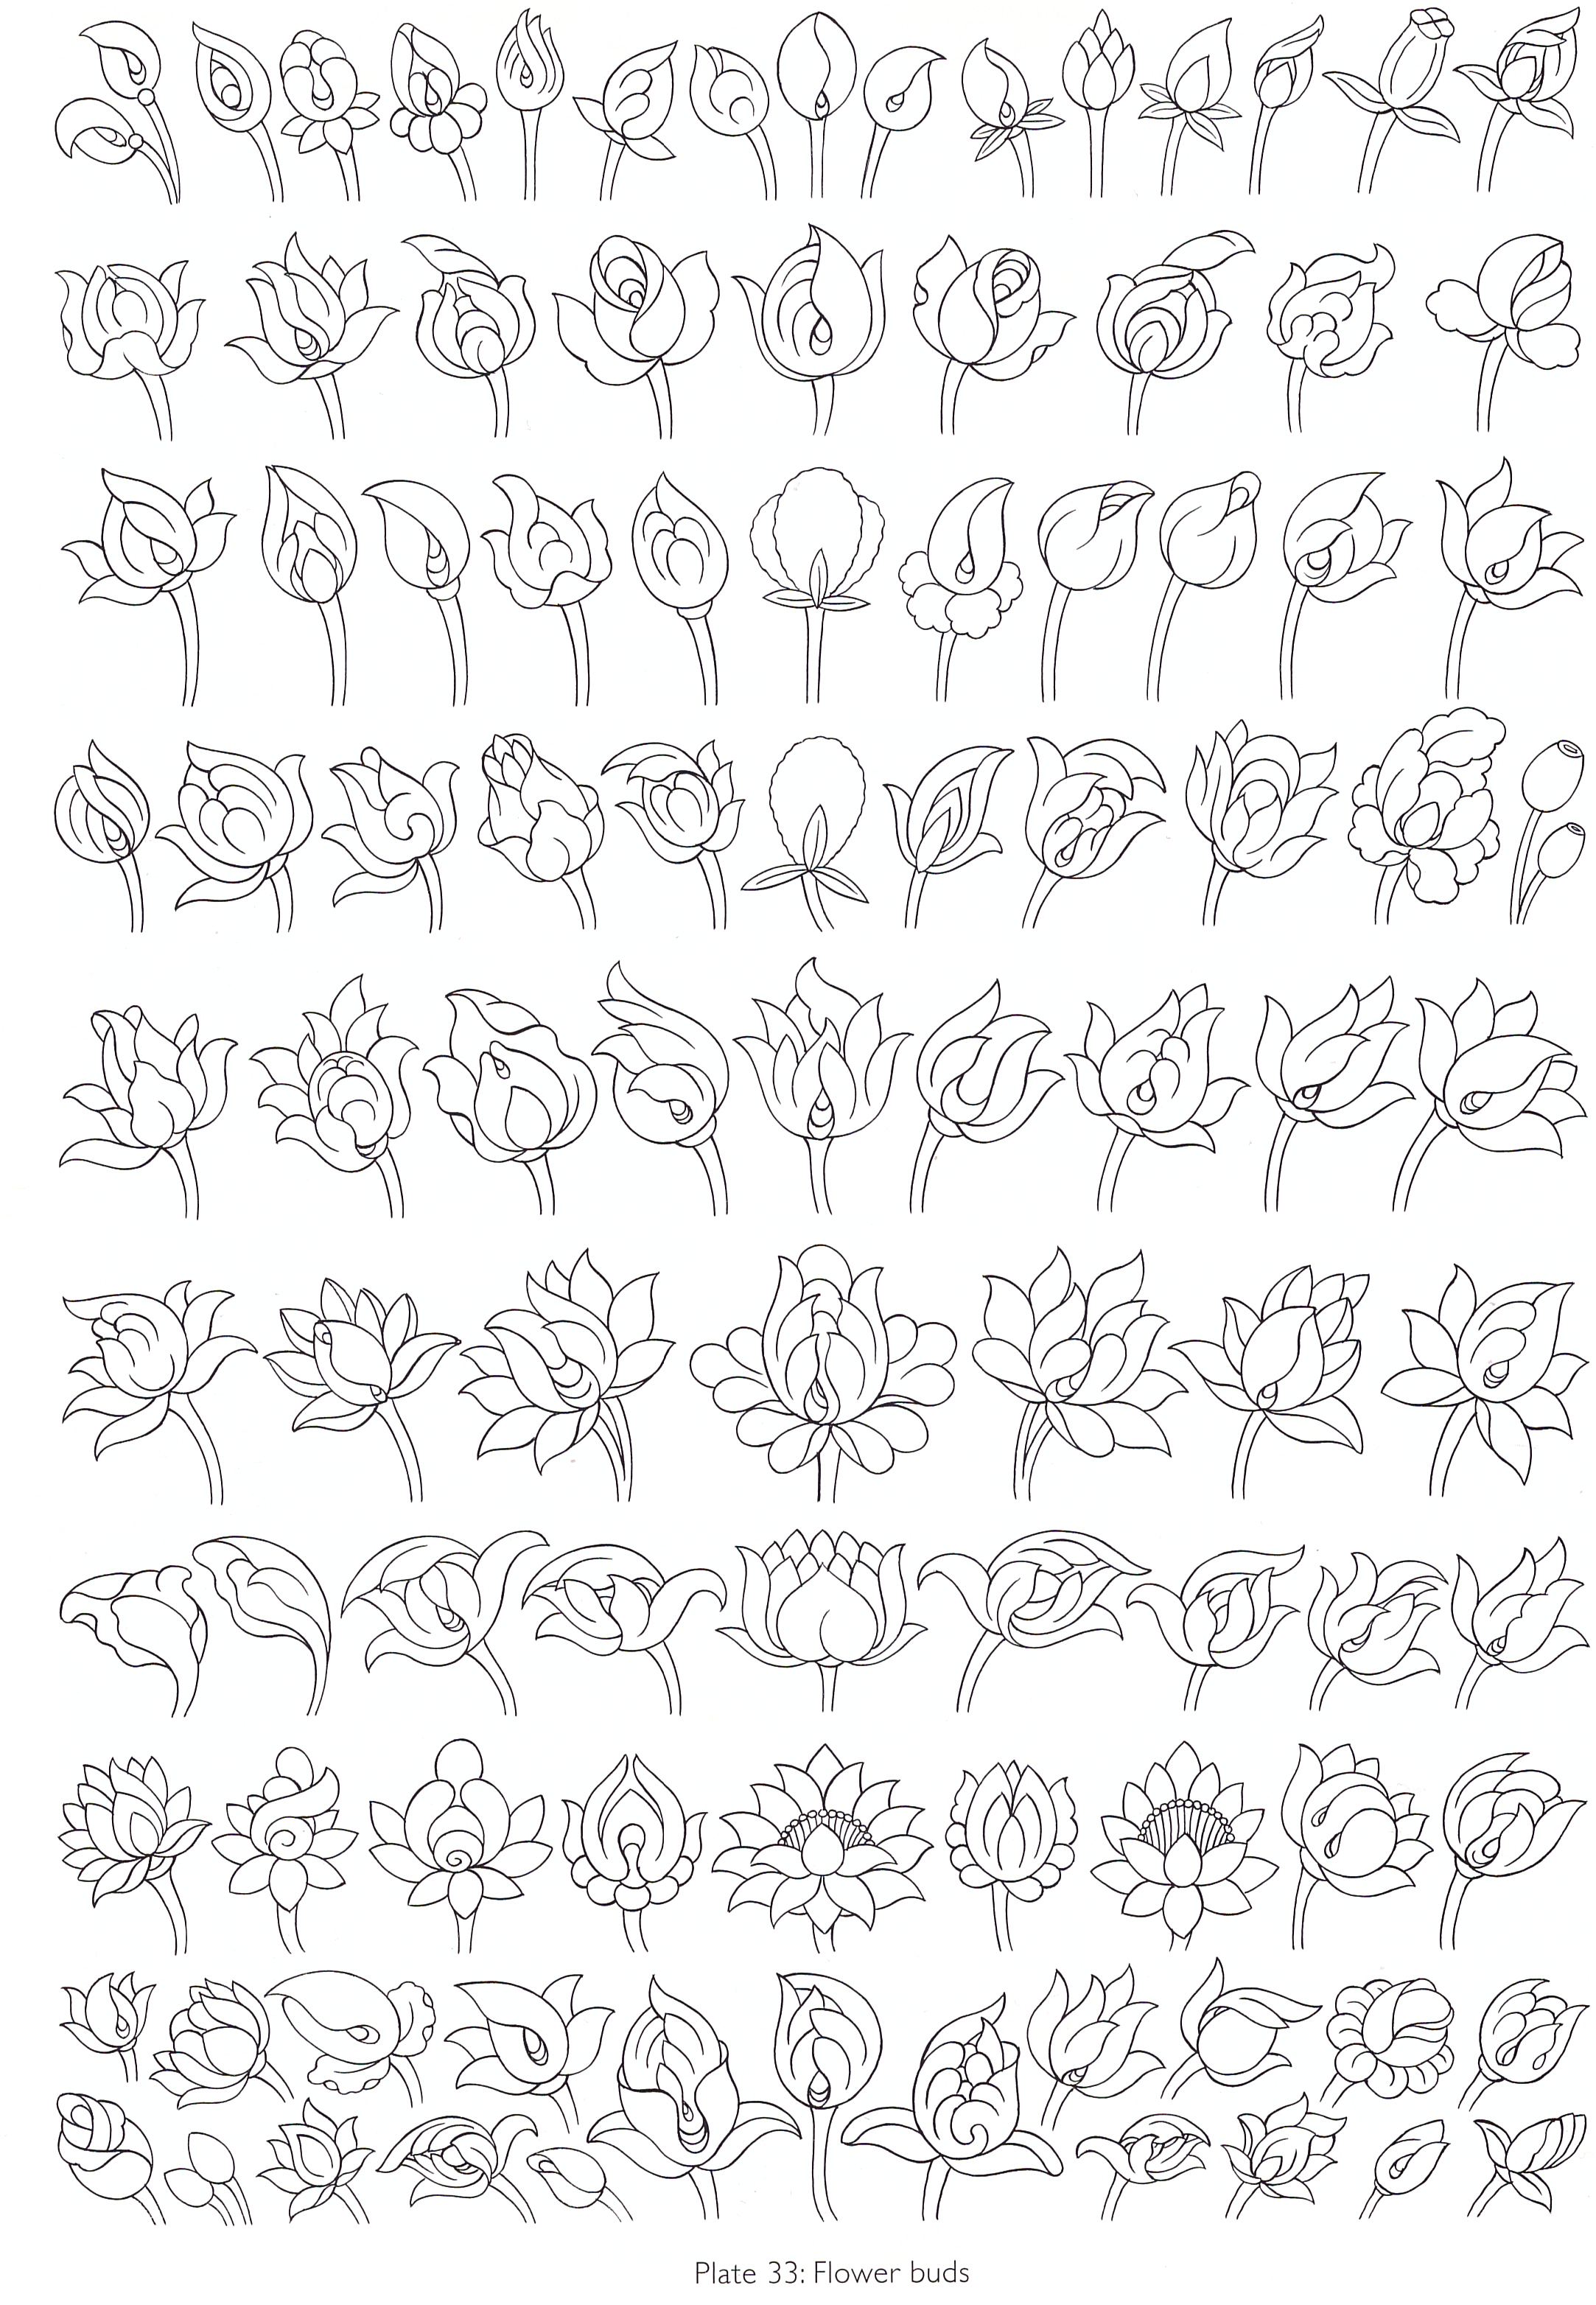 Robert Beer - planche 33 - fleurs en bouton.jpeg